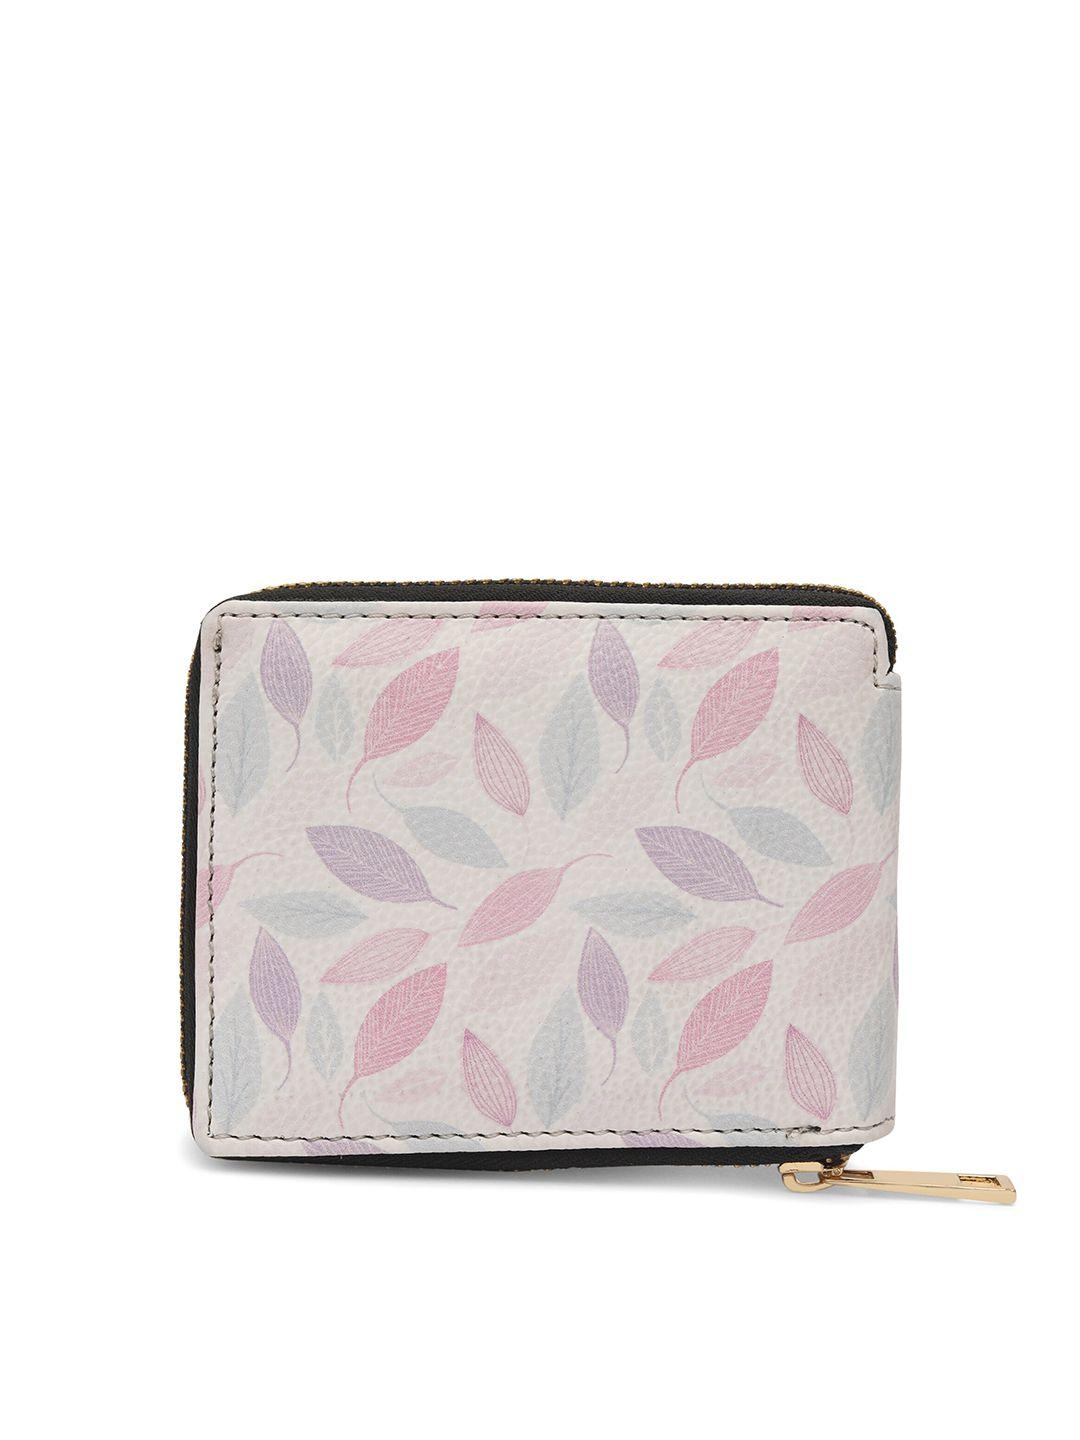 team 11 women white & pink floral printed zip around wallet